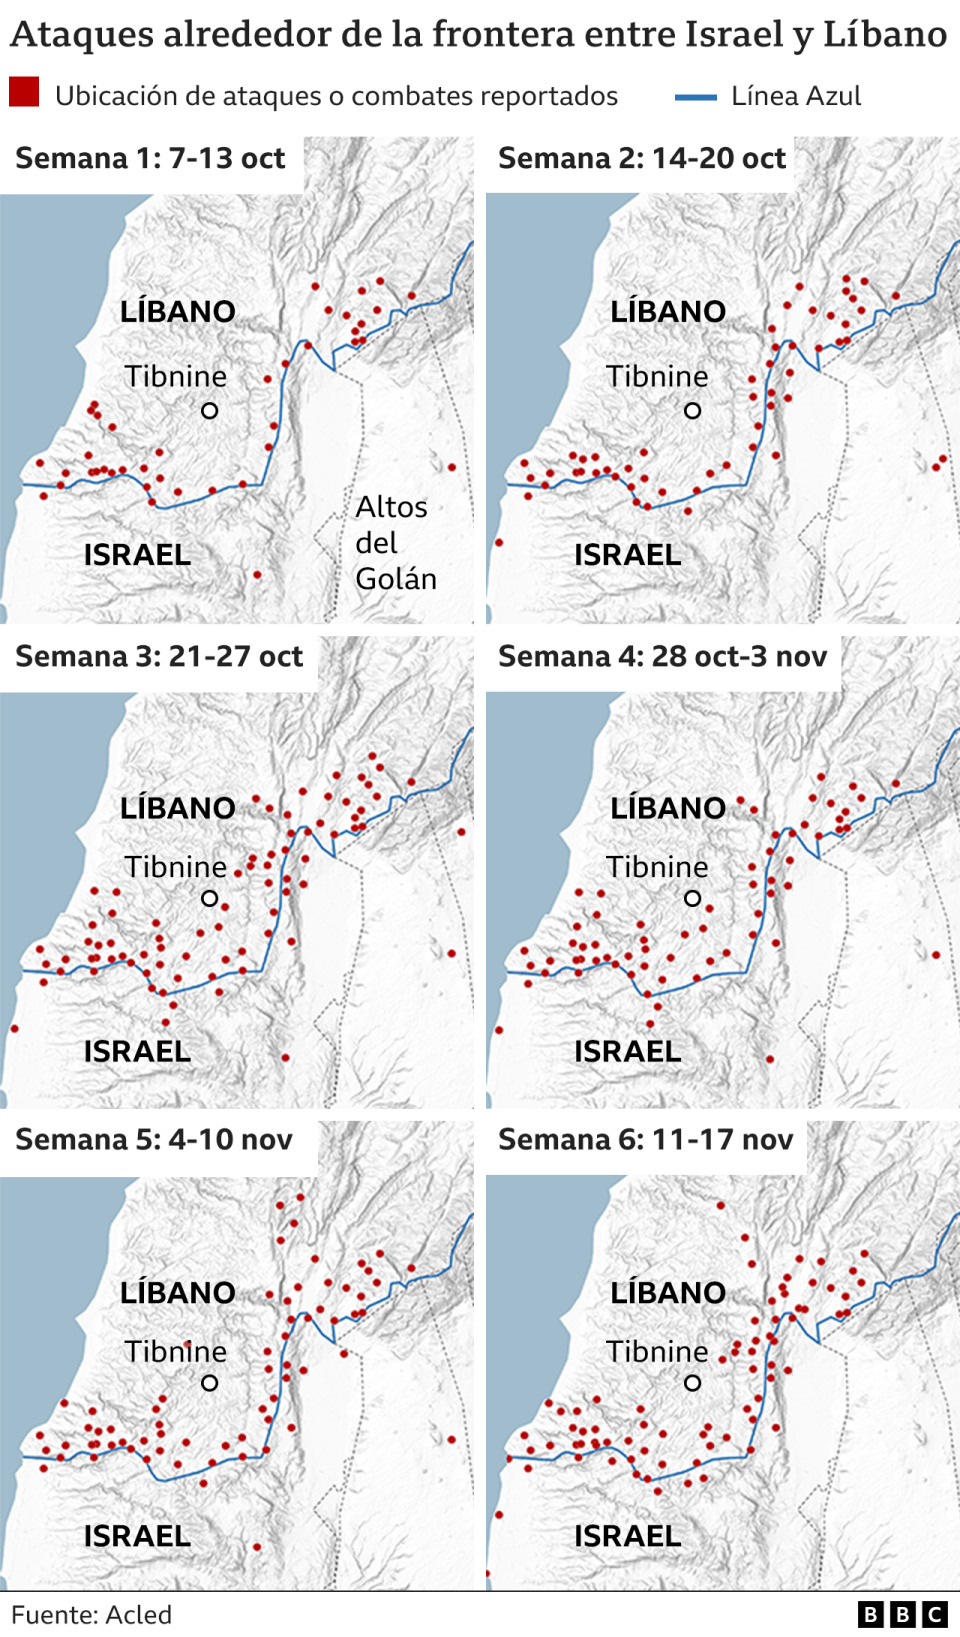 Ataques en la frontera entre Israel y Líbano. 